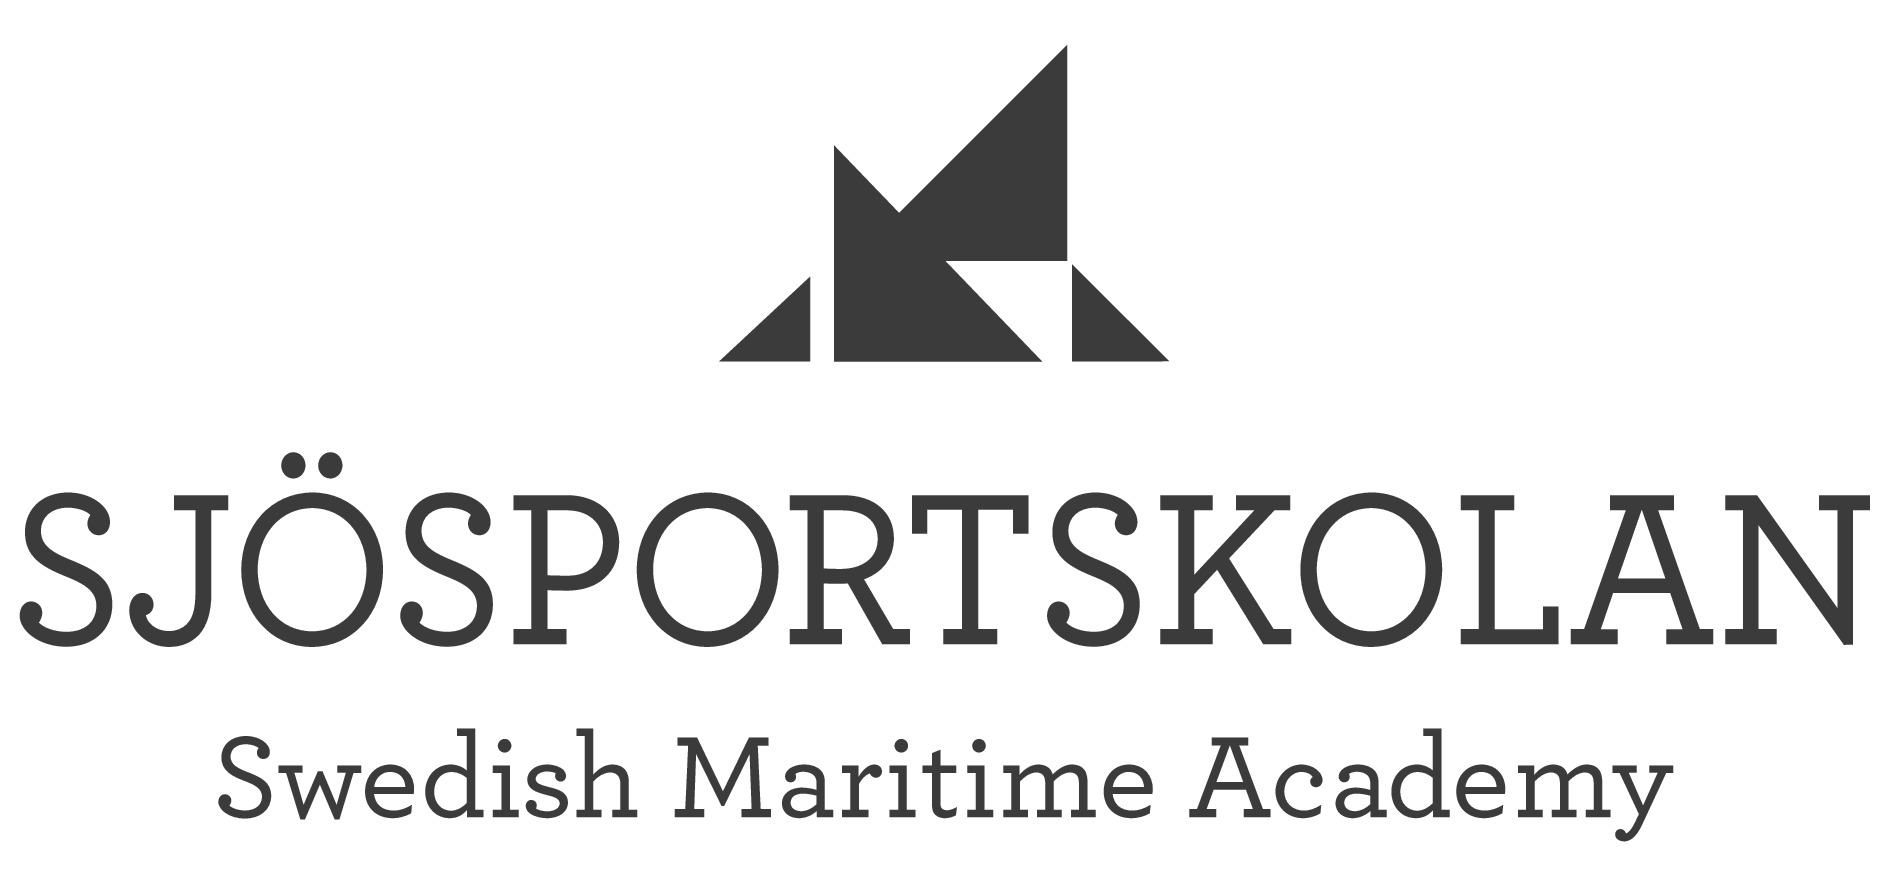 Sjösportskolan Swedish Maritime Academy